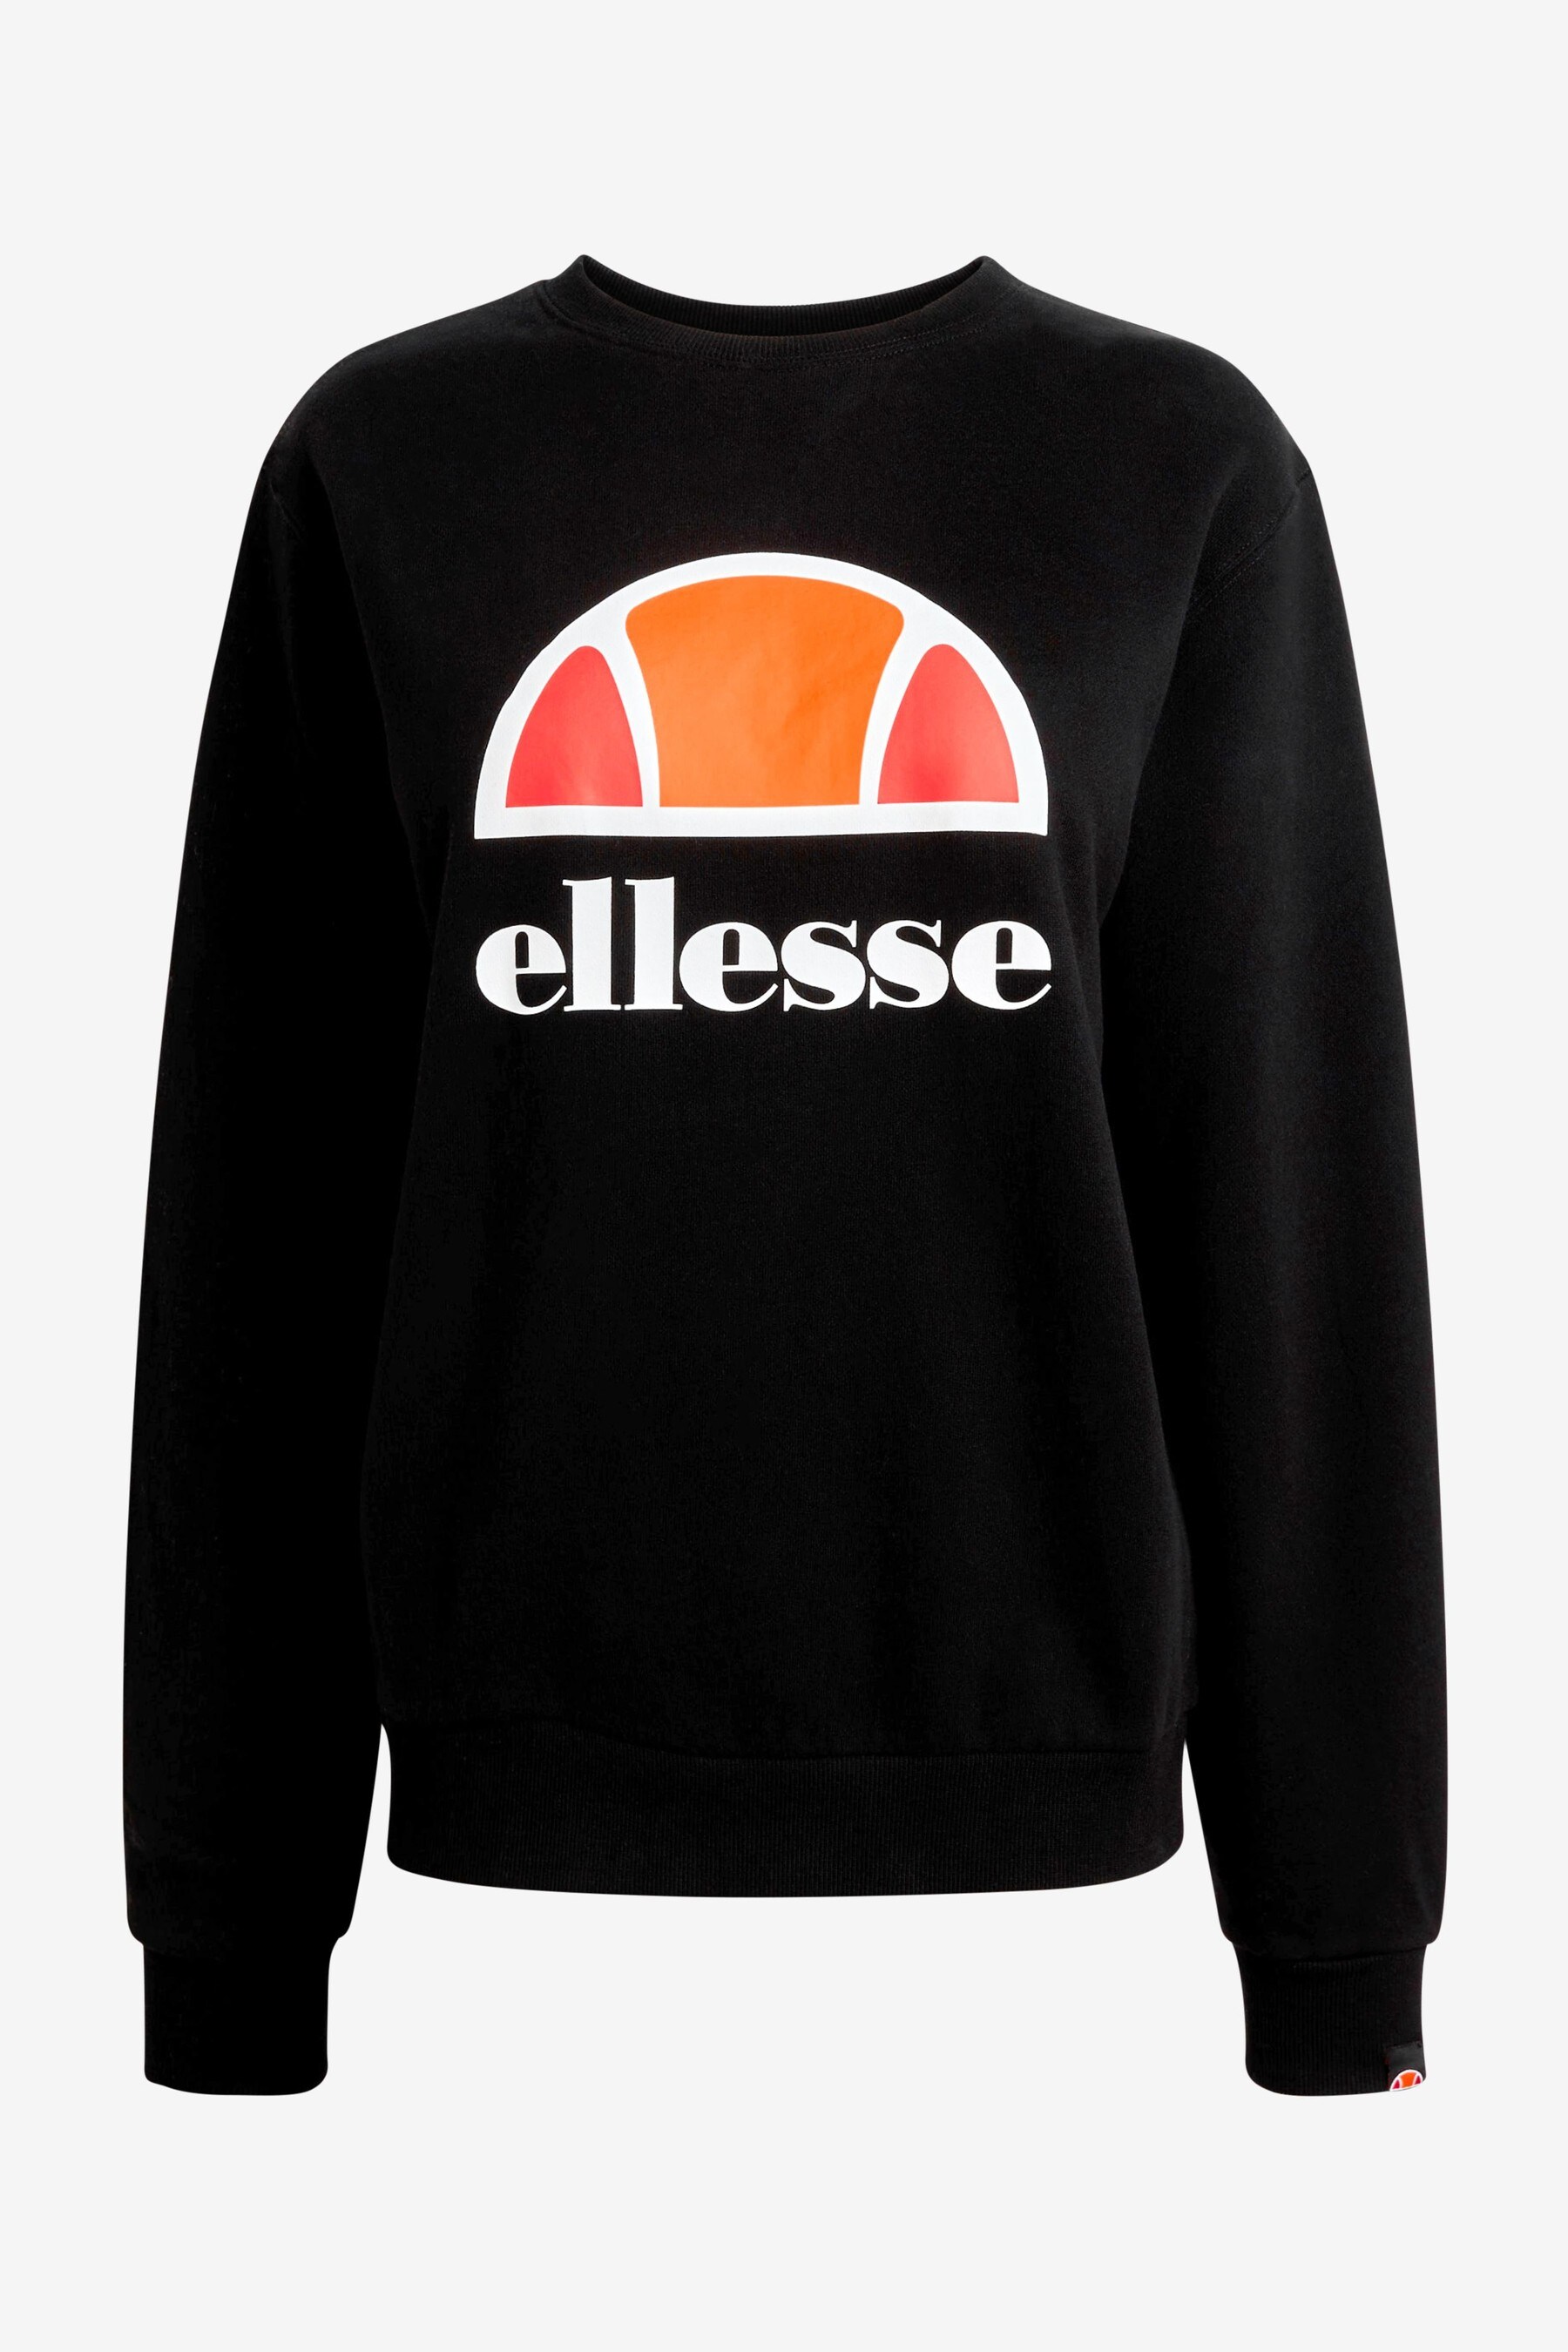 Buy Ellesse Black Corneo Sweatshirt from the Next UK online shop